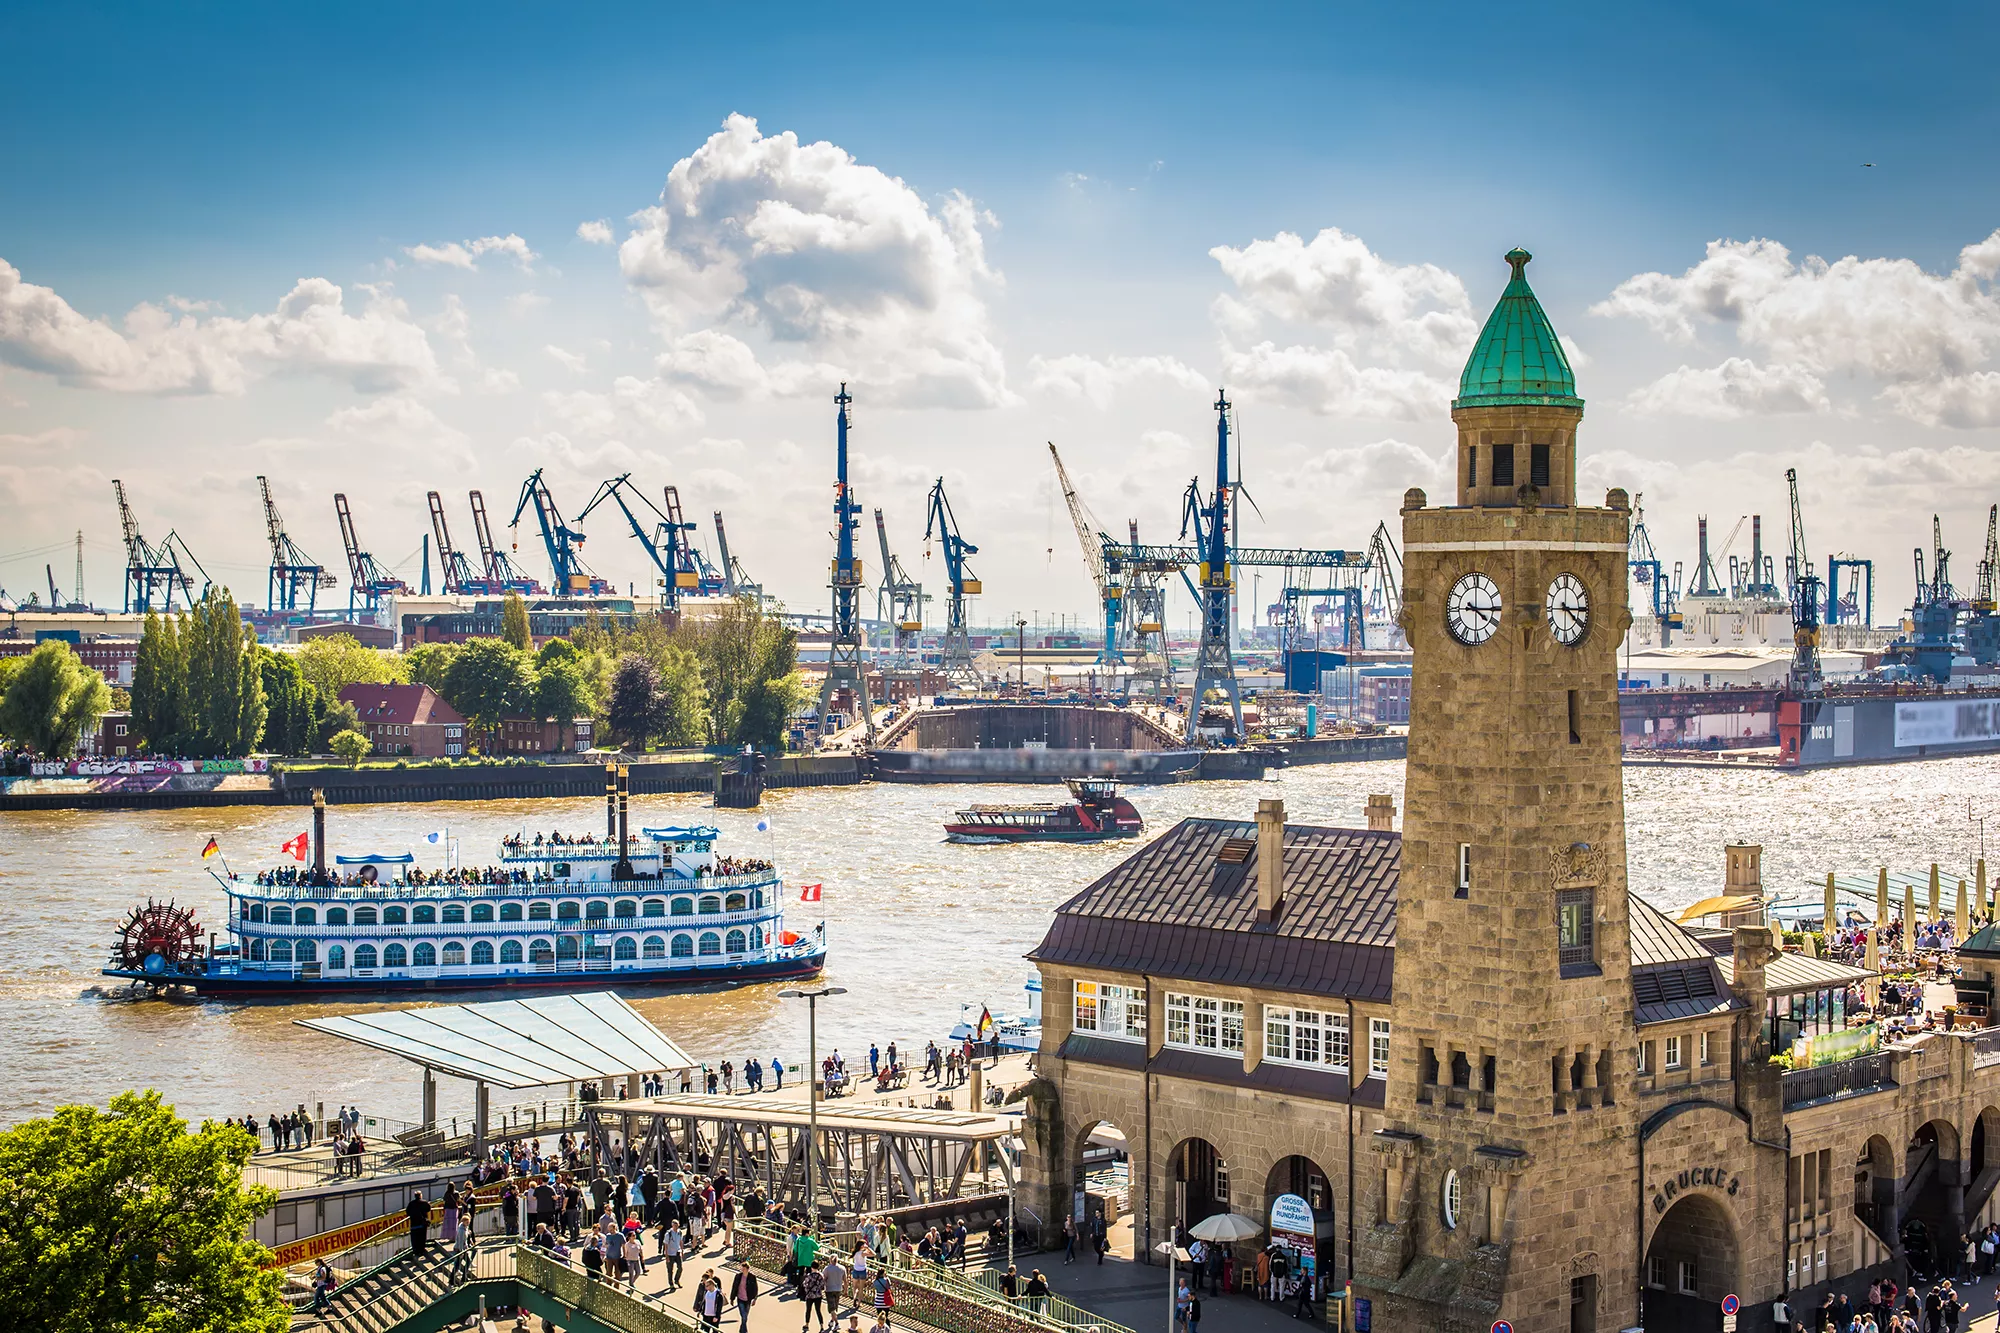 Hafen in Hamburg mit Radschaufeldampfer Louisiana Star bei Hafenrundfahrten Hamburg